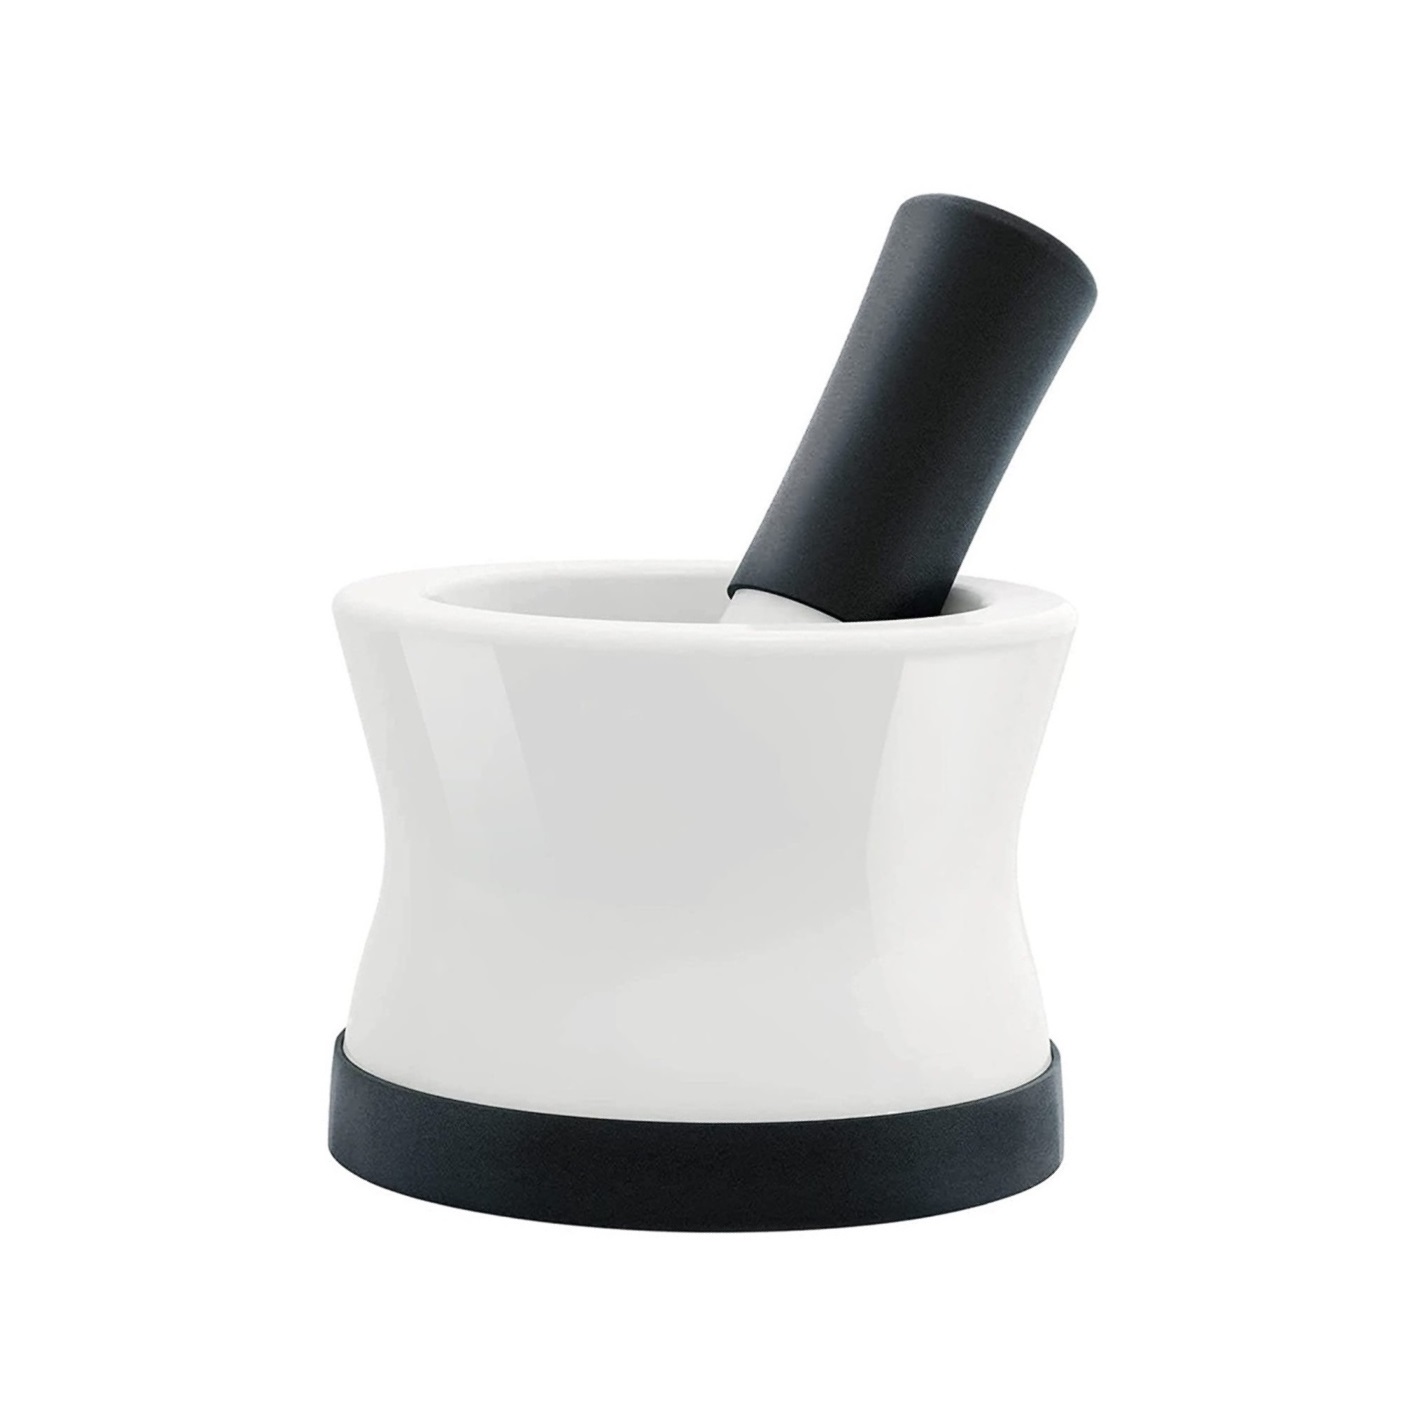 Hmoždíř s paličkou z keramiky a silikonu 11 cm černý - Cooler Kitchen